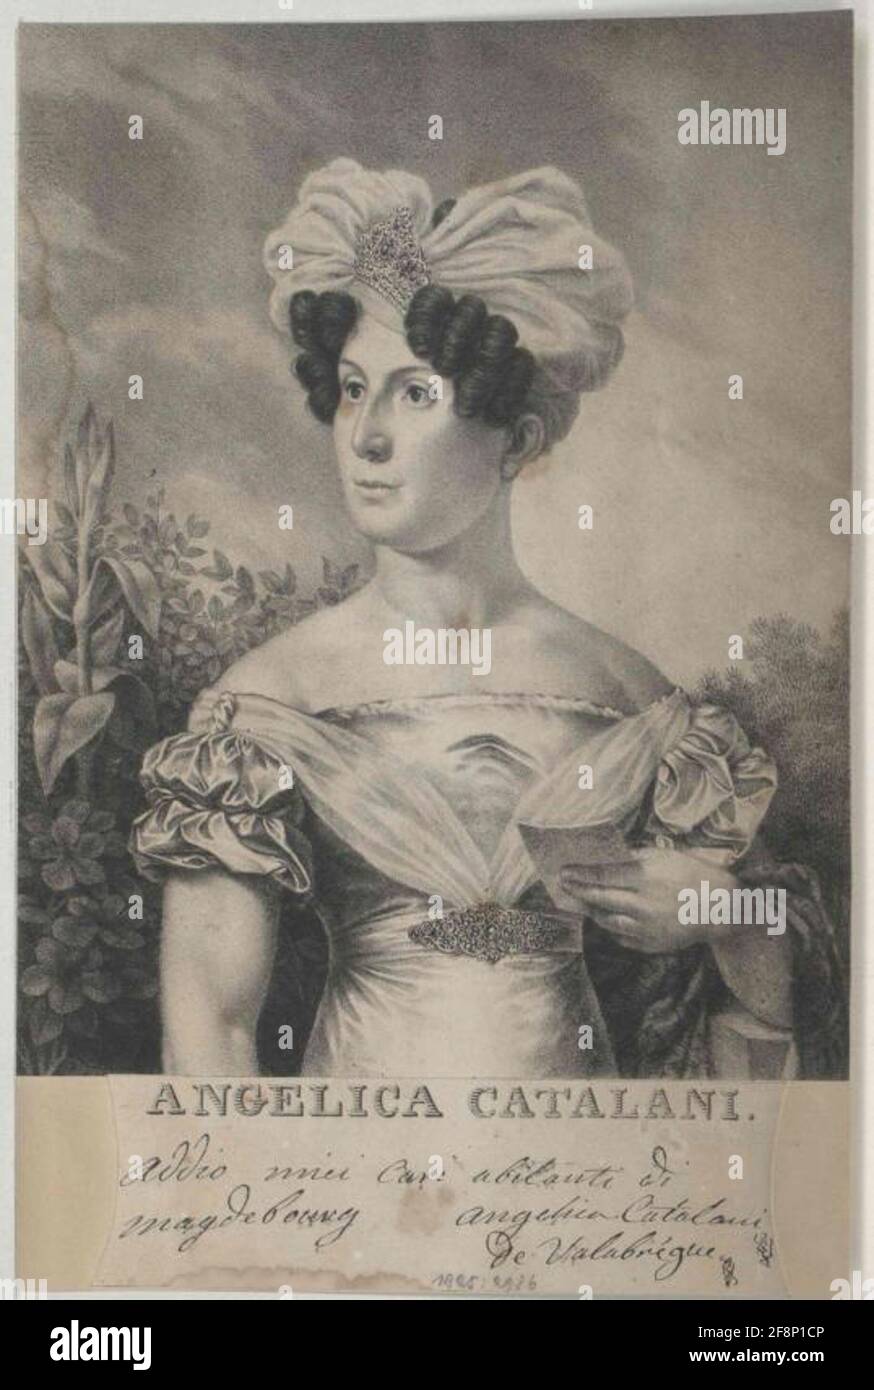 NPG D32733; Angelica Catalani - Portrait - National Portrait Gallery